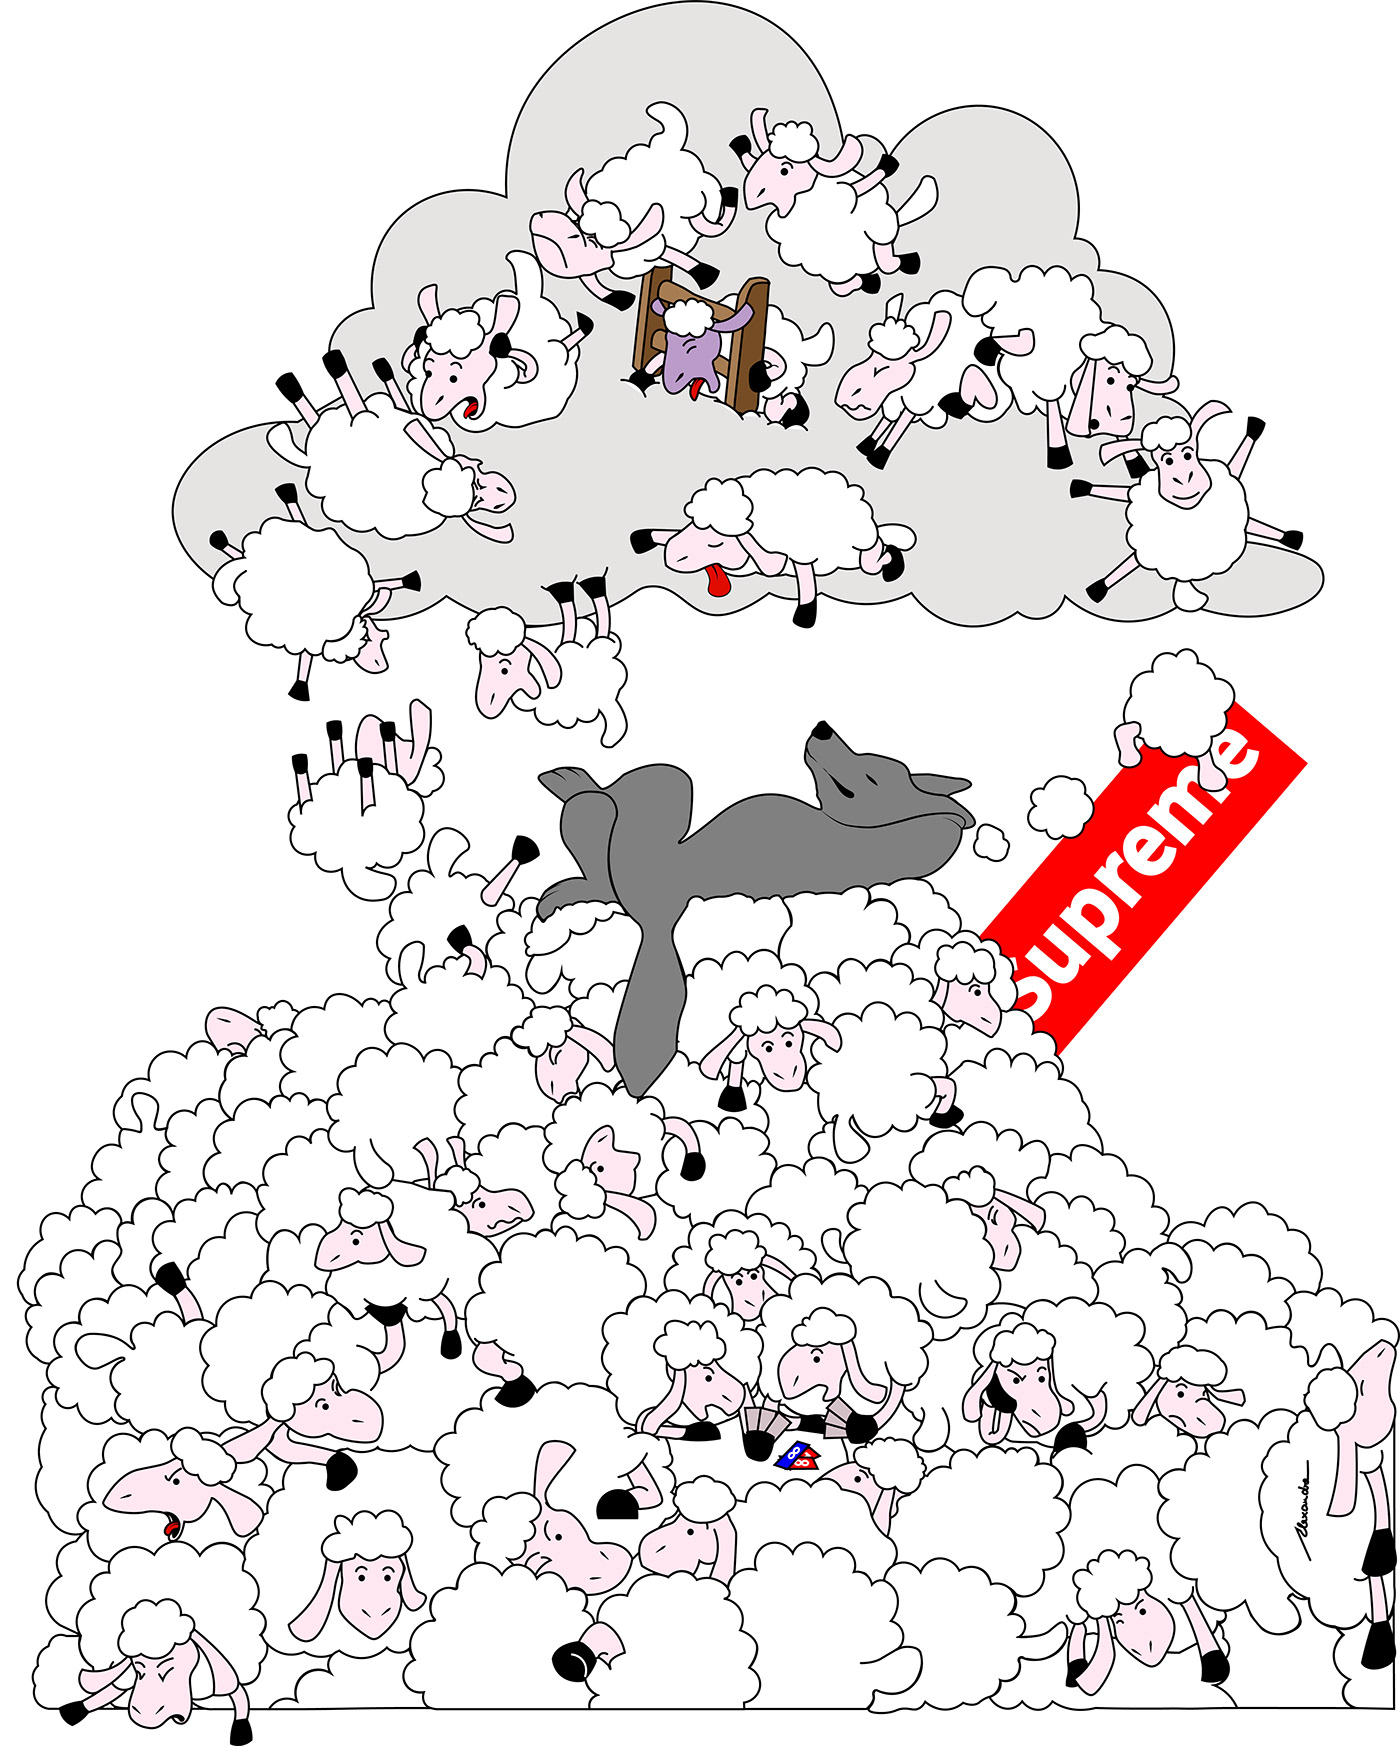 sheep cartoon adobe illustrator designer visual identity wolf Digital Art  ILLUSTRATION  concept art